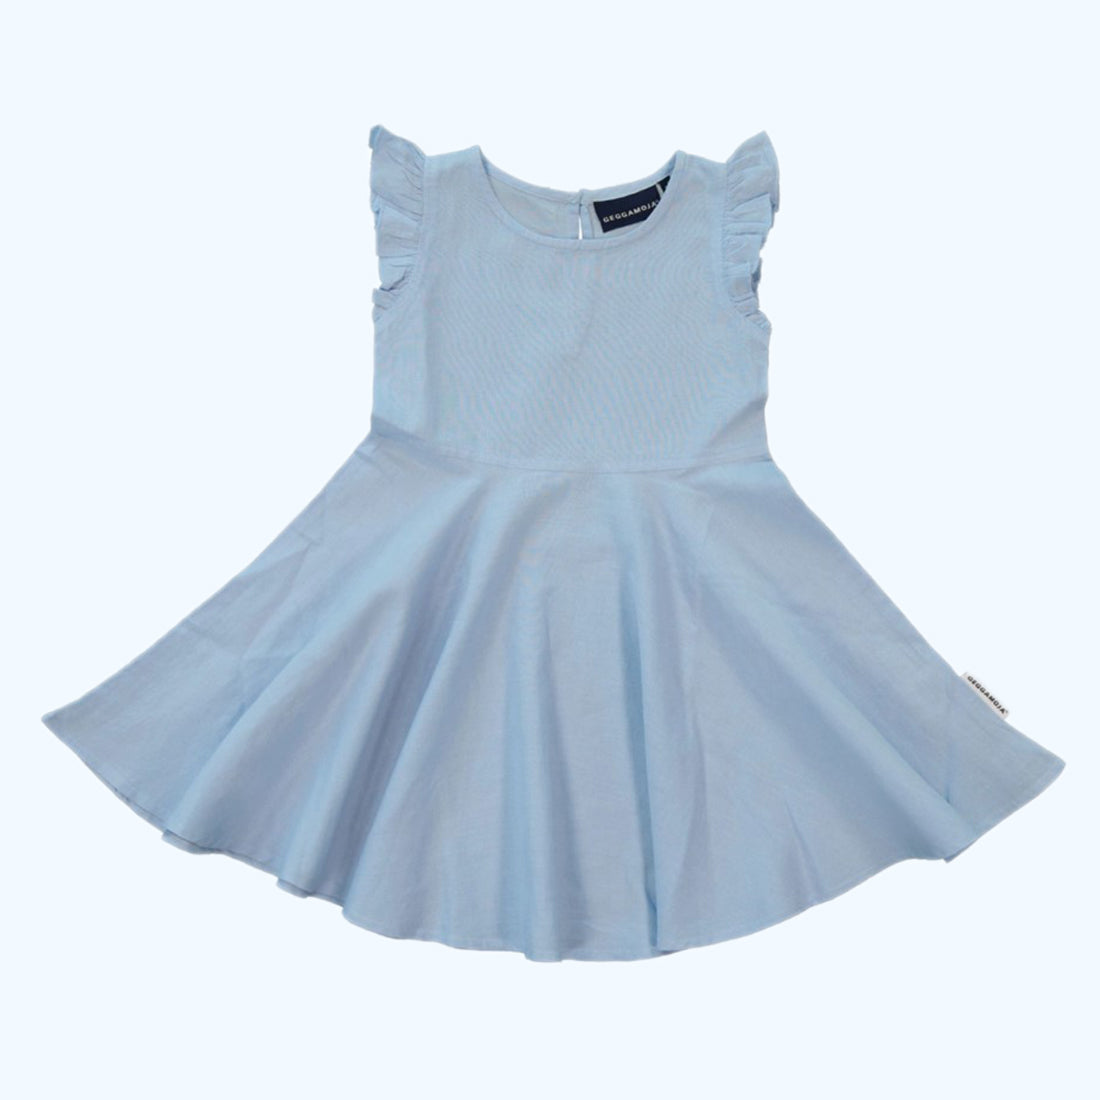 Geggamoja ® Cotton/Linen Summer Dress - SKY BLUE